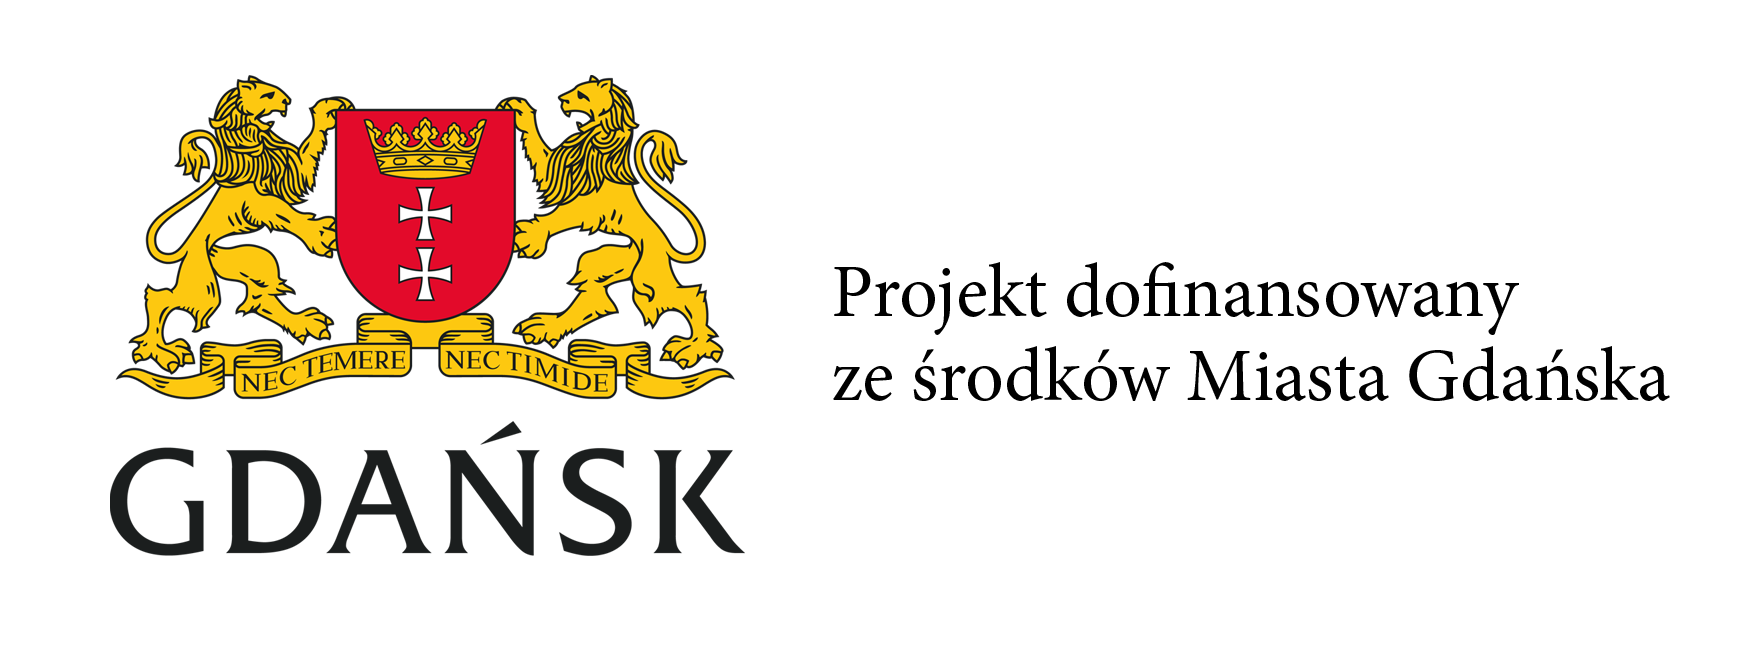 Logo GDAŃSK + Projekt dofinansowany ze środków Miasta Gdańska